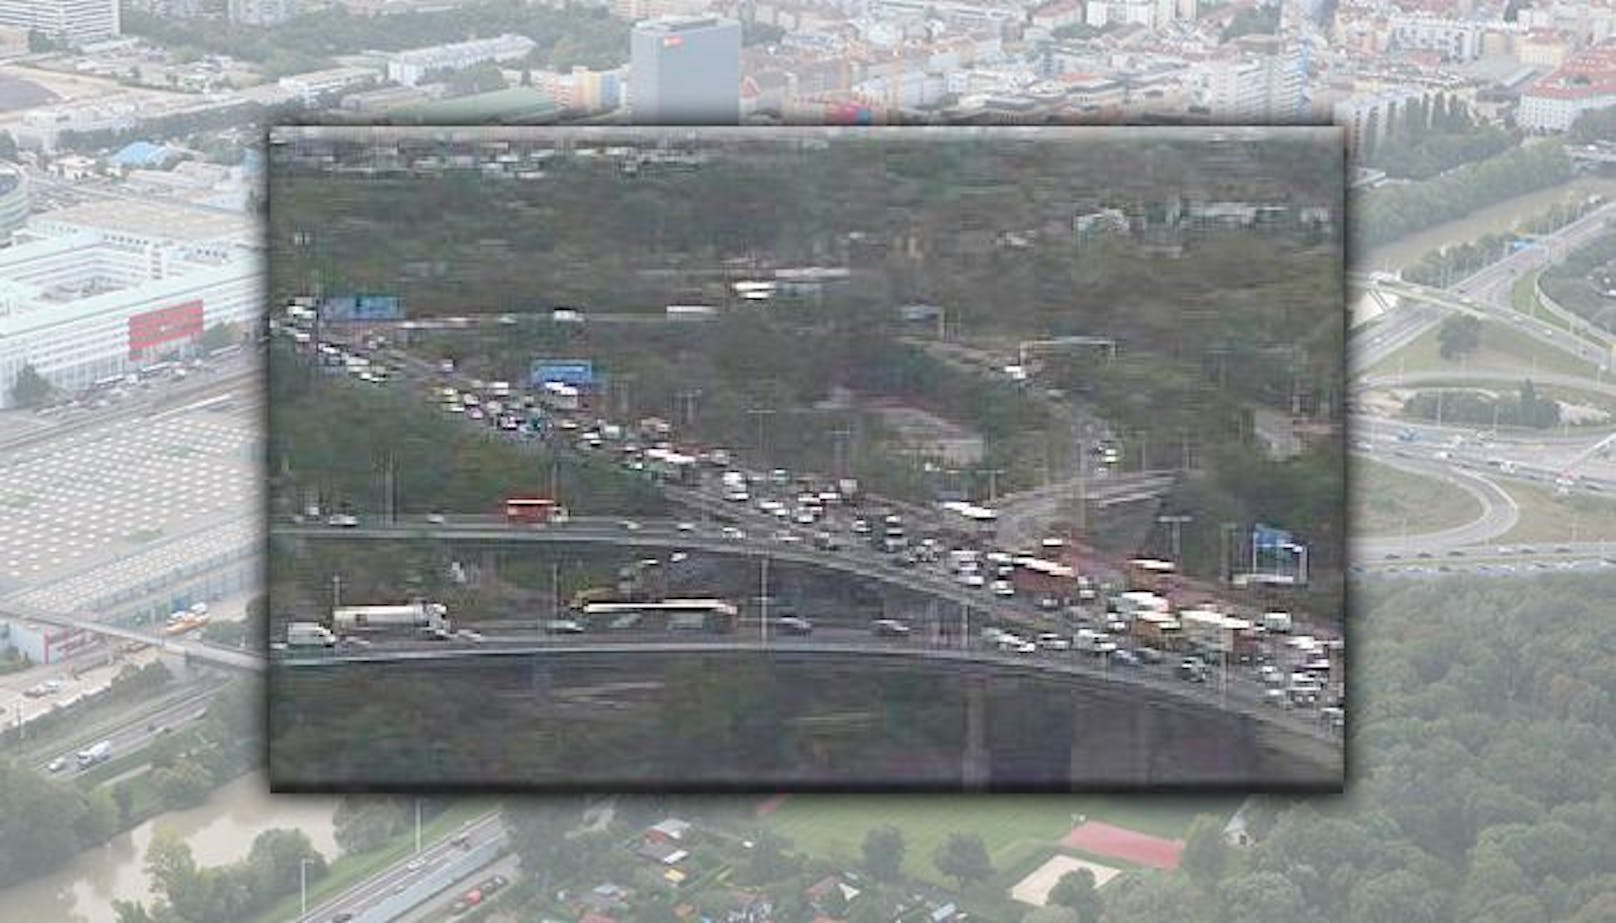 Stau auf der Tangente in Wien - das aktuelle Foto zeigt das hohe Verkehrsaufkommen.